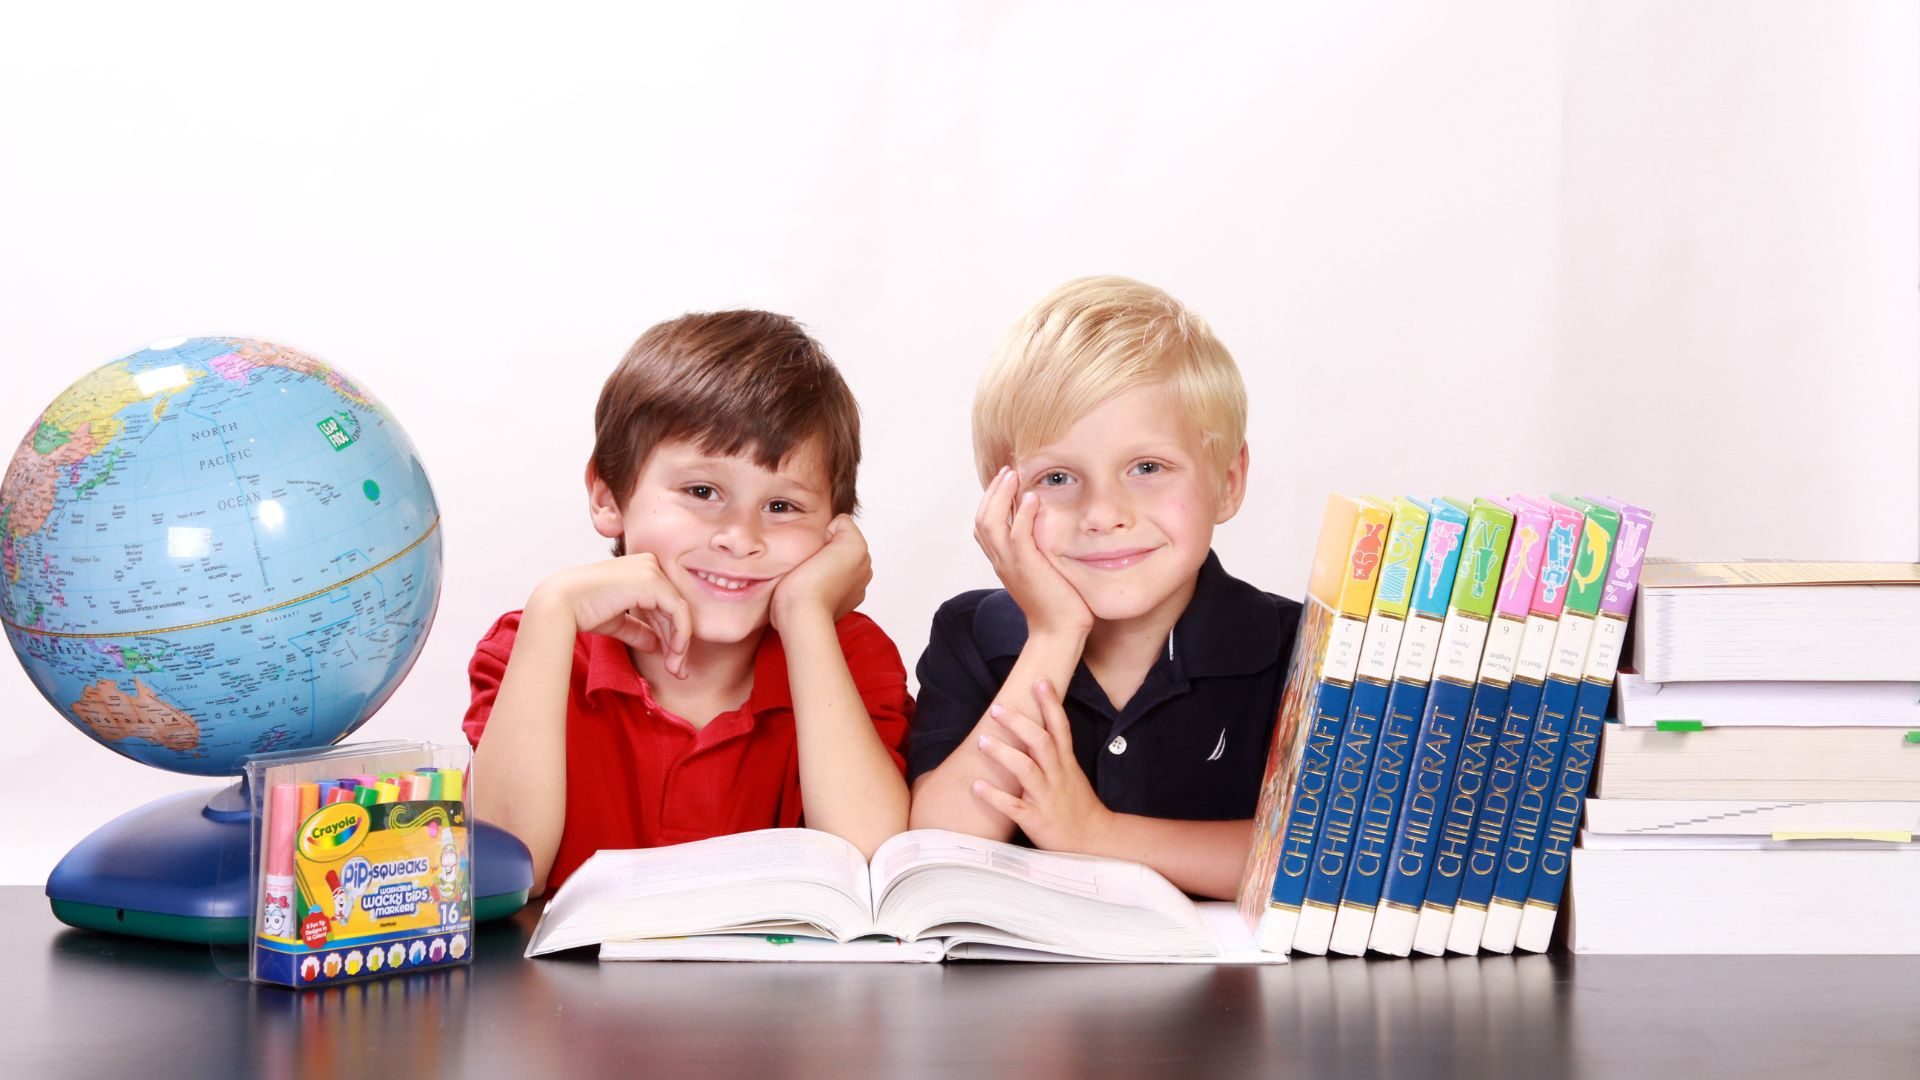 Aprender inglés en la infancia: ¿por qué es esencial?